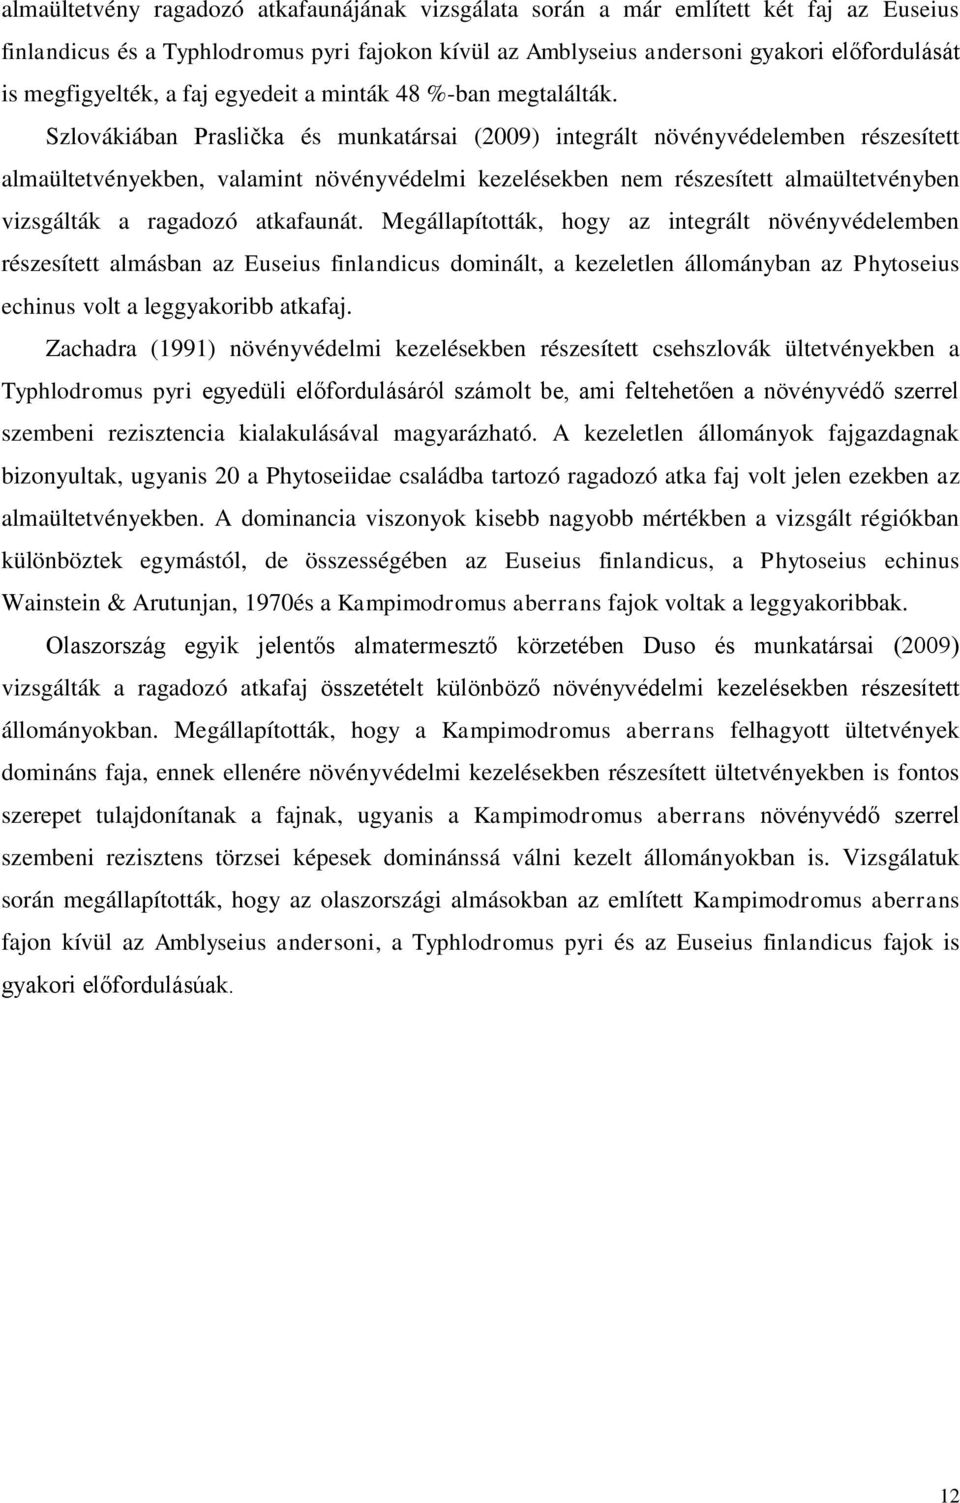 Szlovákiában Praslička és munkatársai (2009) integrált növényvédelemben részesített almaültetvényekben, valamint növényvédelmi kezelésekben nem részesített almaültetvényben vizsgálták a ragadozó